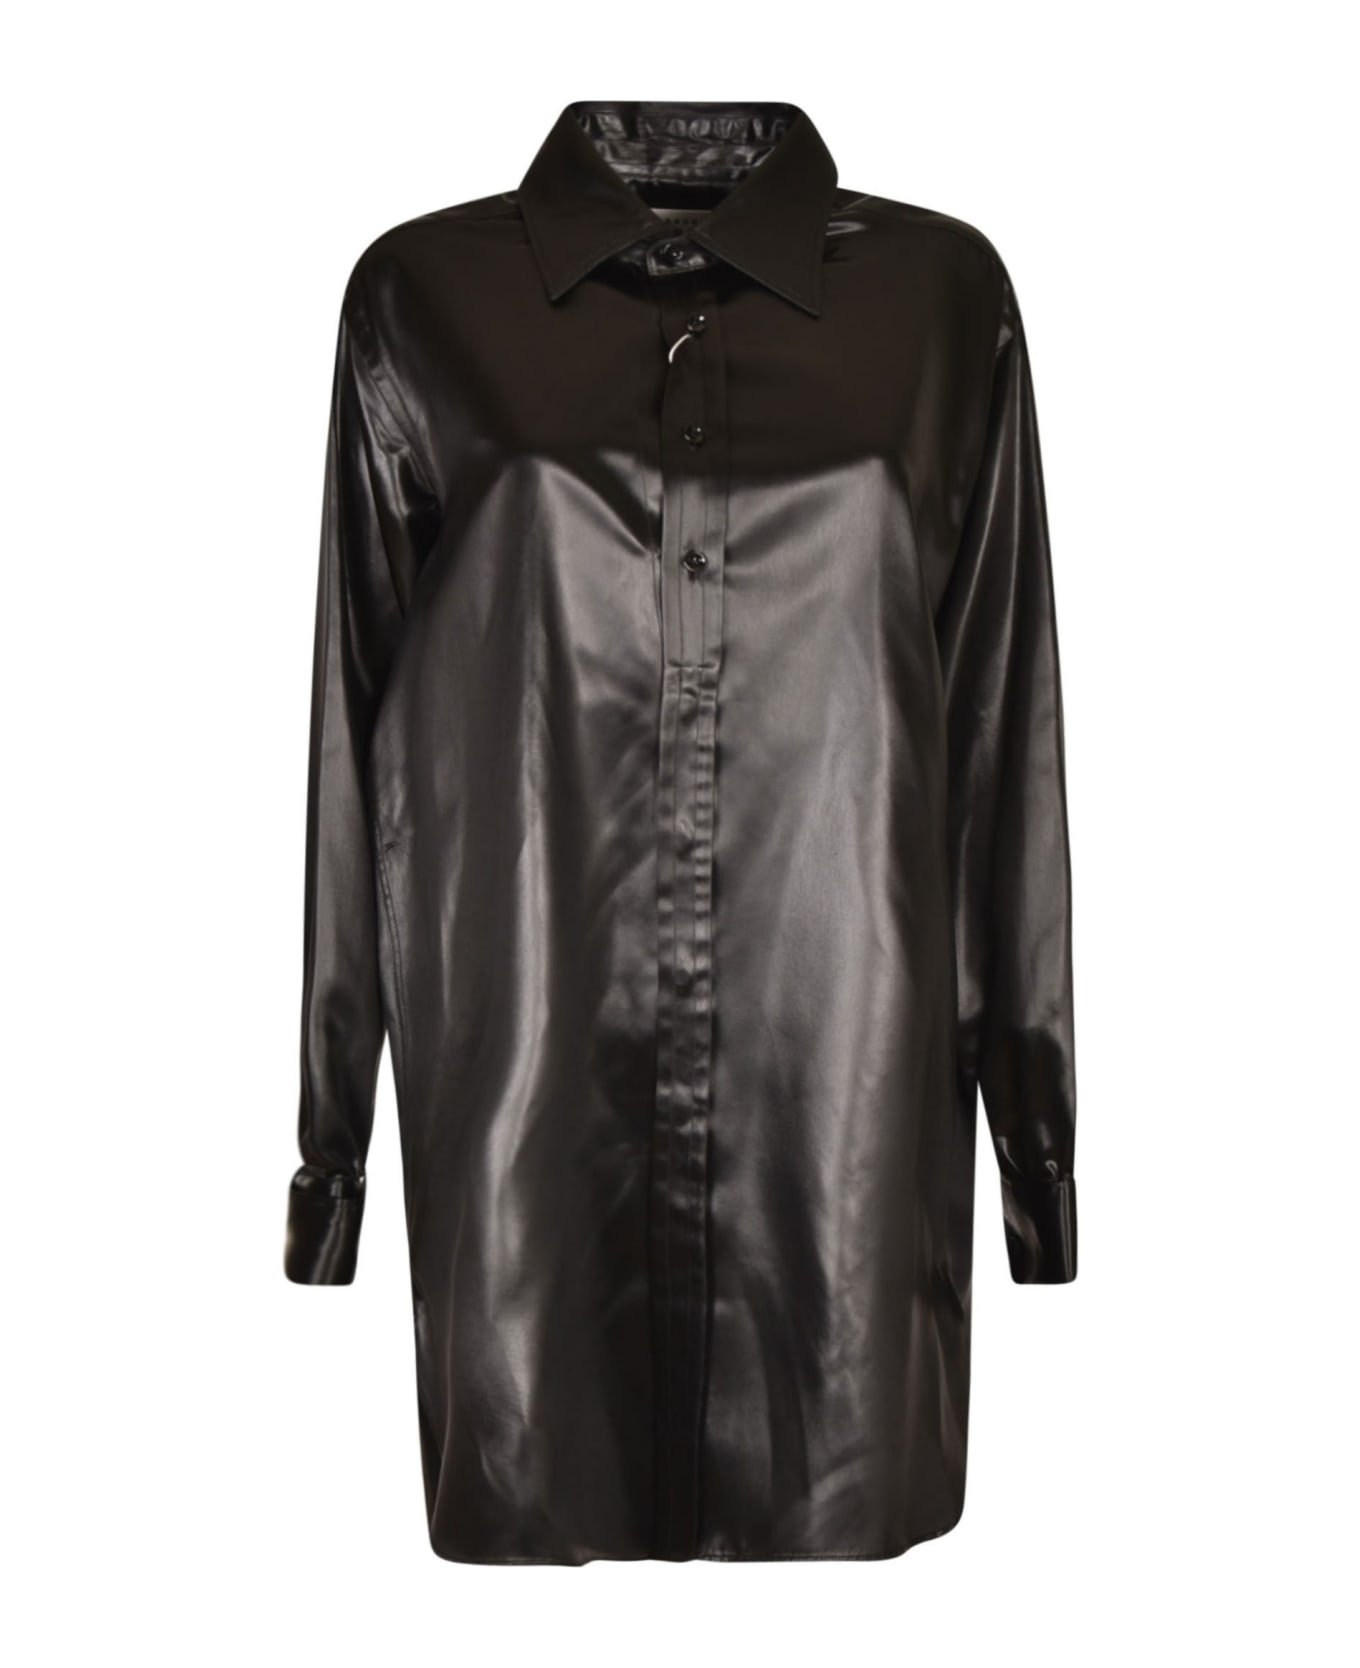 Maison Margiela Rear Logo Oversized Shiny Shirt - Black